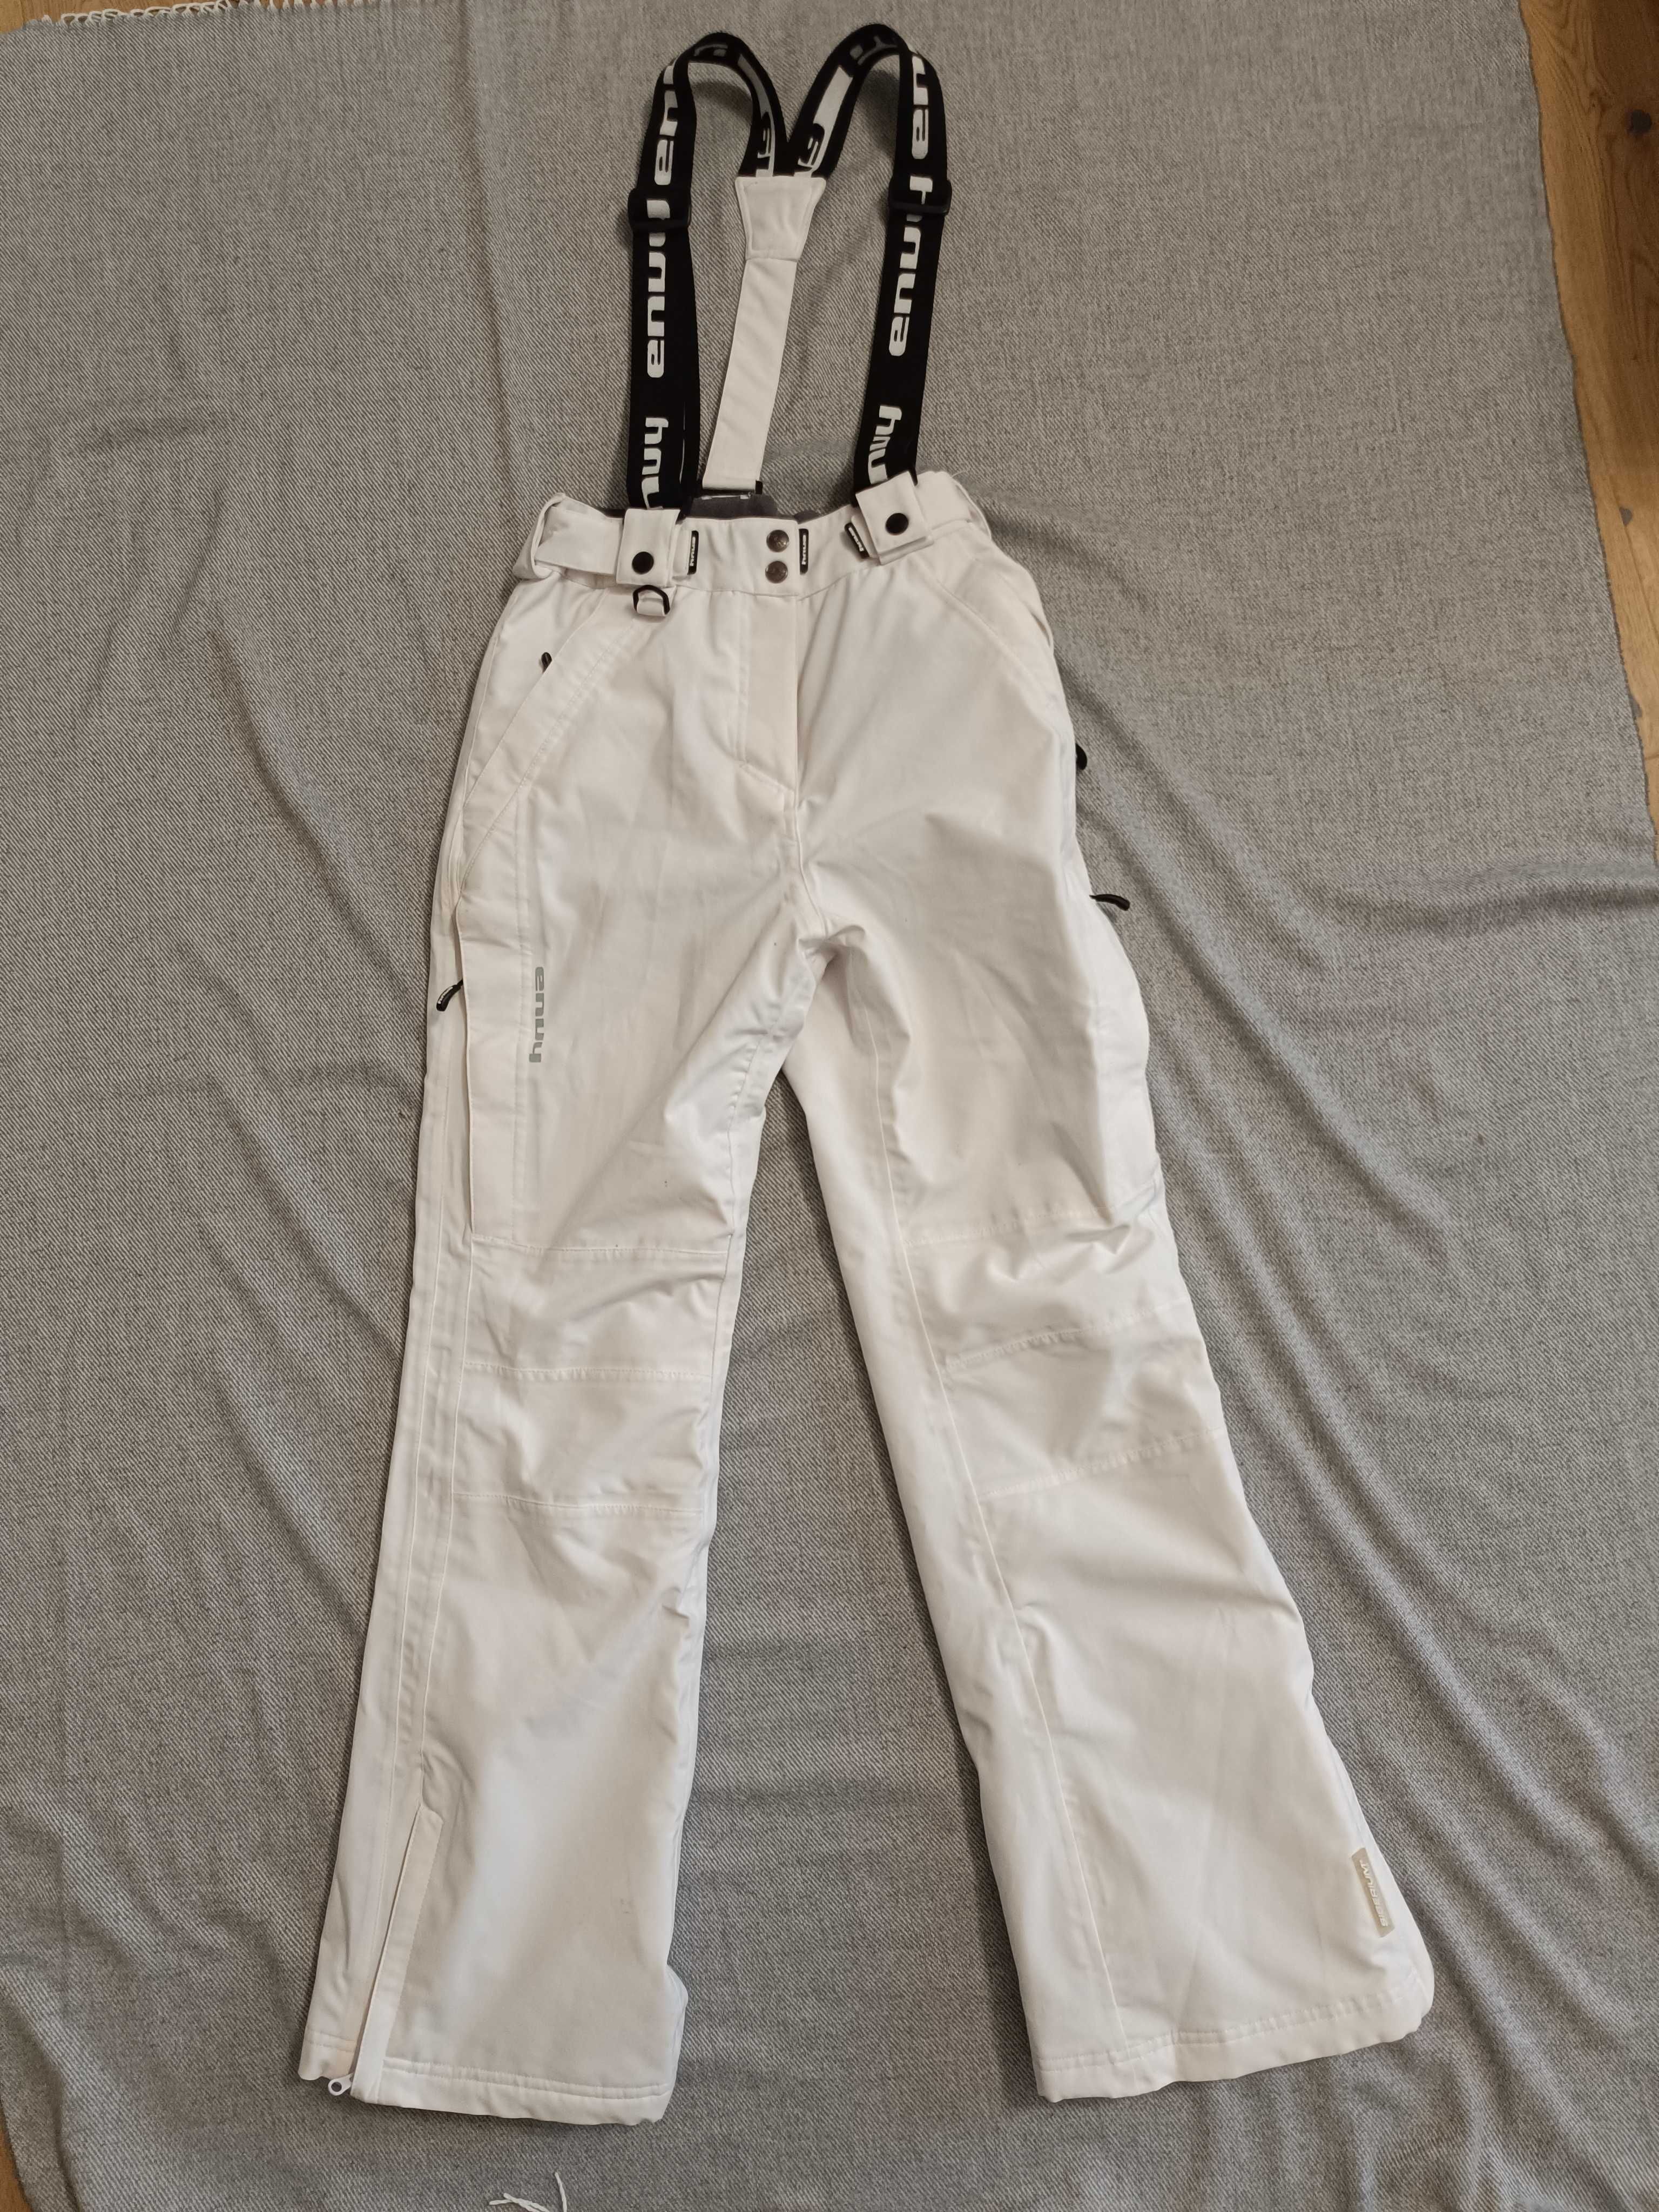 Damskie białe spodnie narciarskie firmy Envy z szelkami rozmiar 38